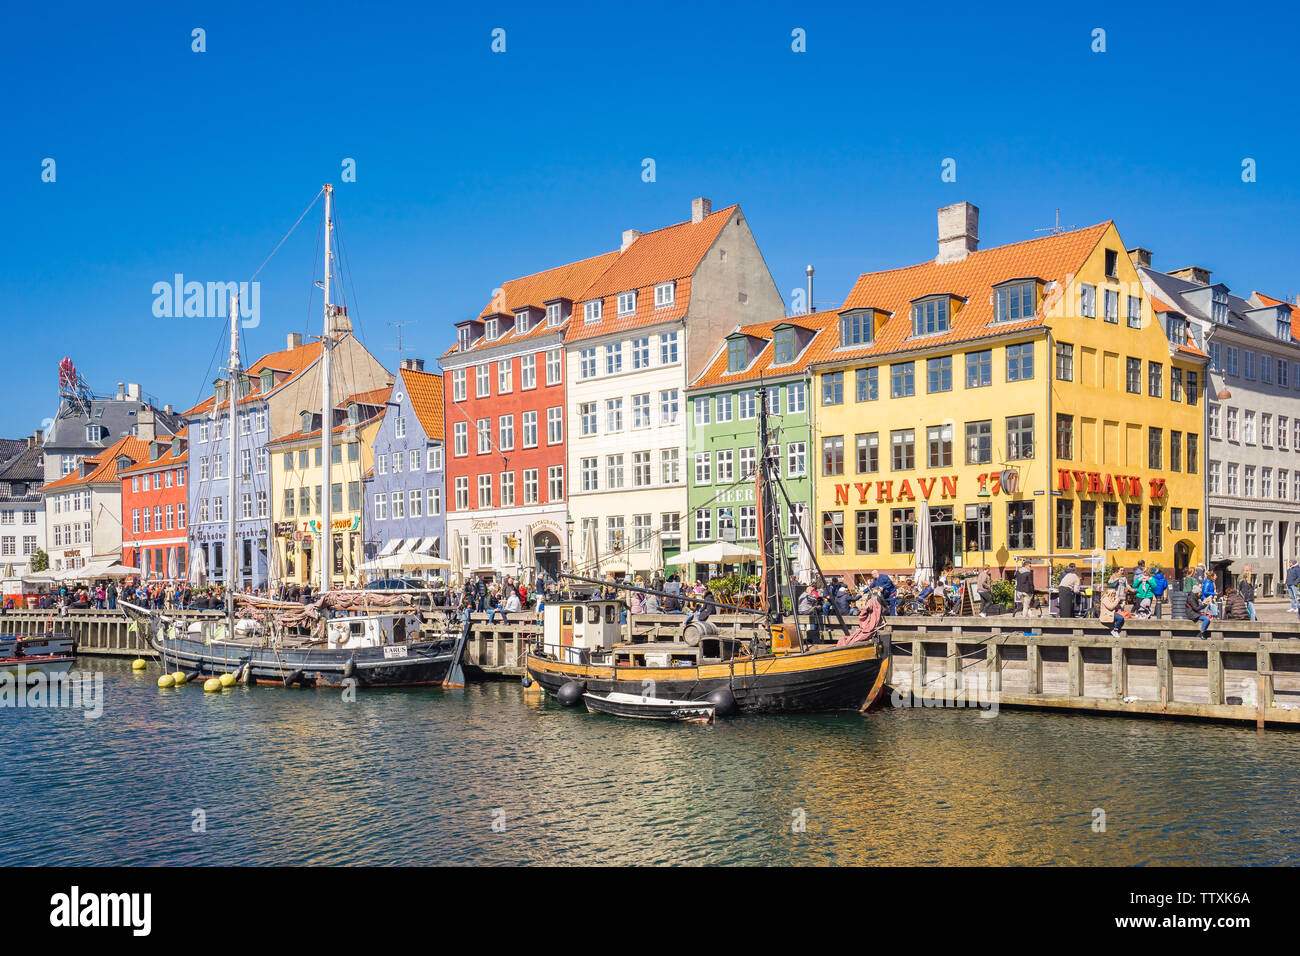 Kopenhagen, Dänemark - 1. Mai 2017: Nyhavn ist ein aus dem 17. Jahrhundert am Wasser-, Kanal- und Unterhaltungsviertel in Kopenhagen, Dänemark. Stockfoto